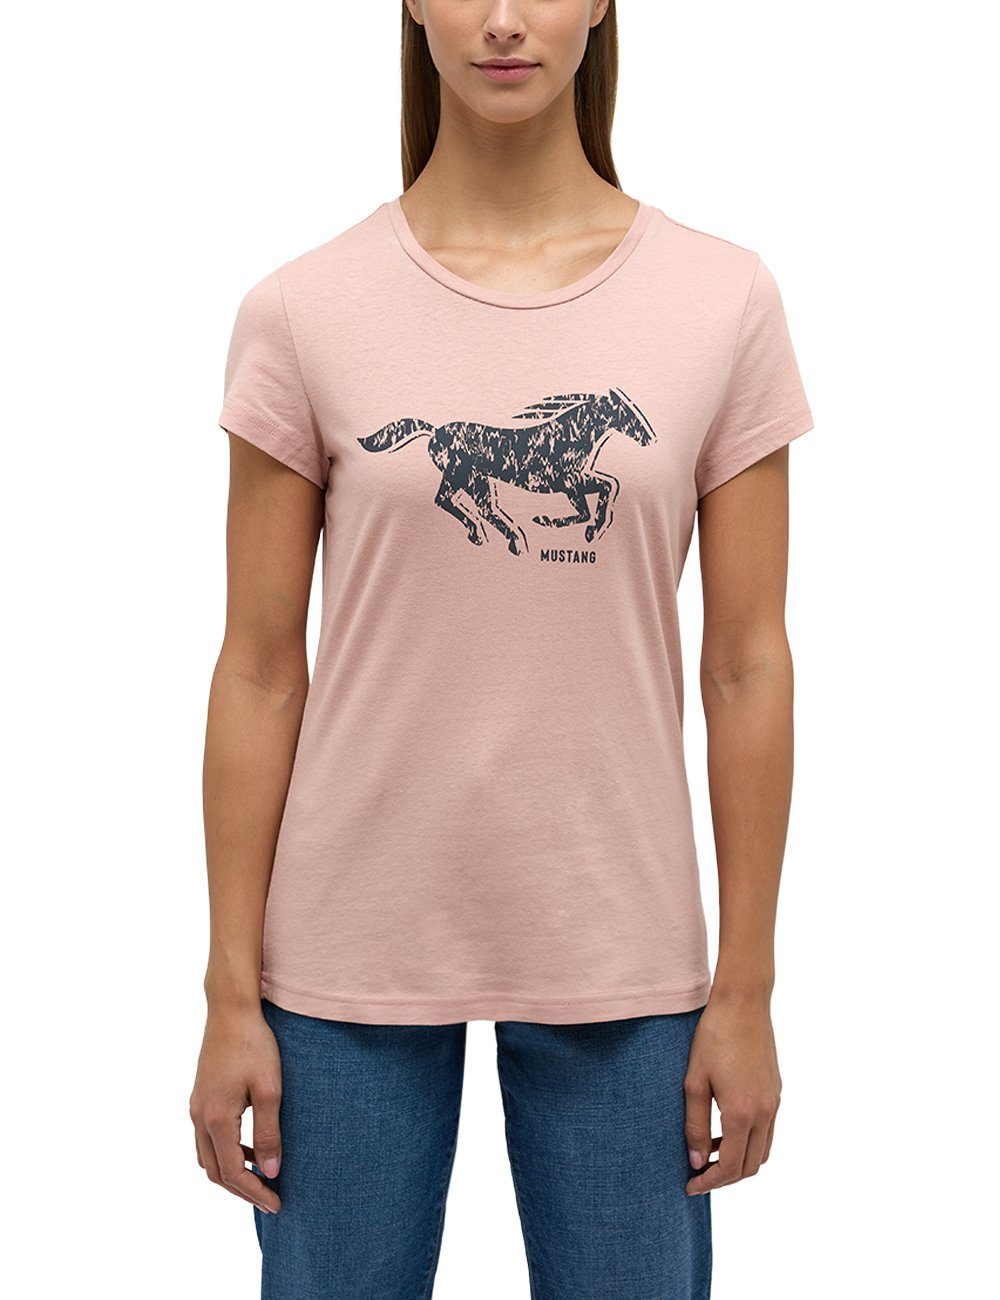 Kurzarmshirt Mustang T-Shirt MUSTANG Print-Shirt hellrosa